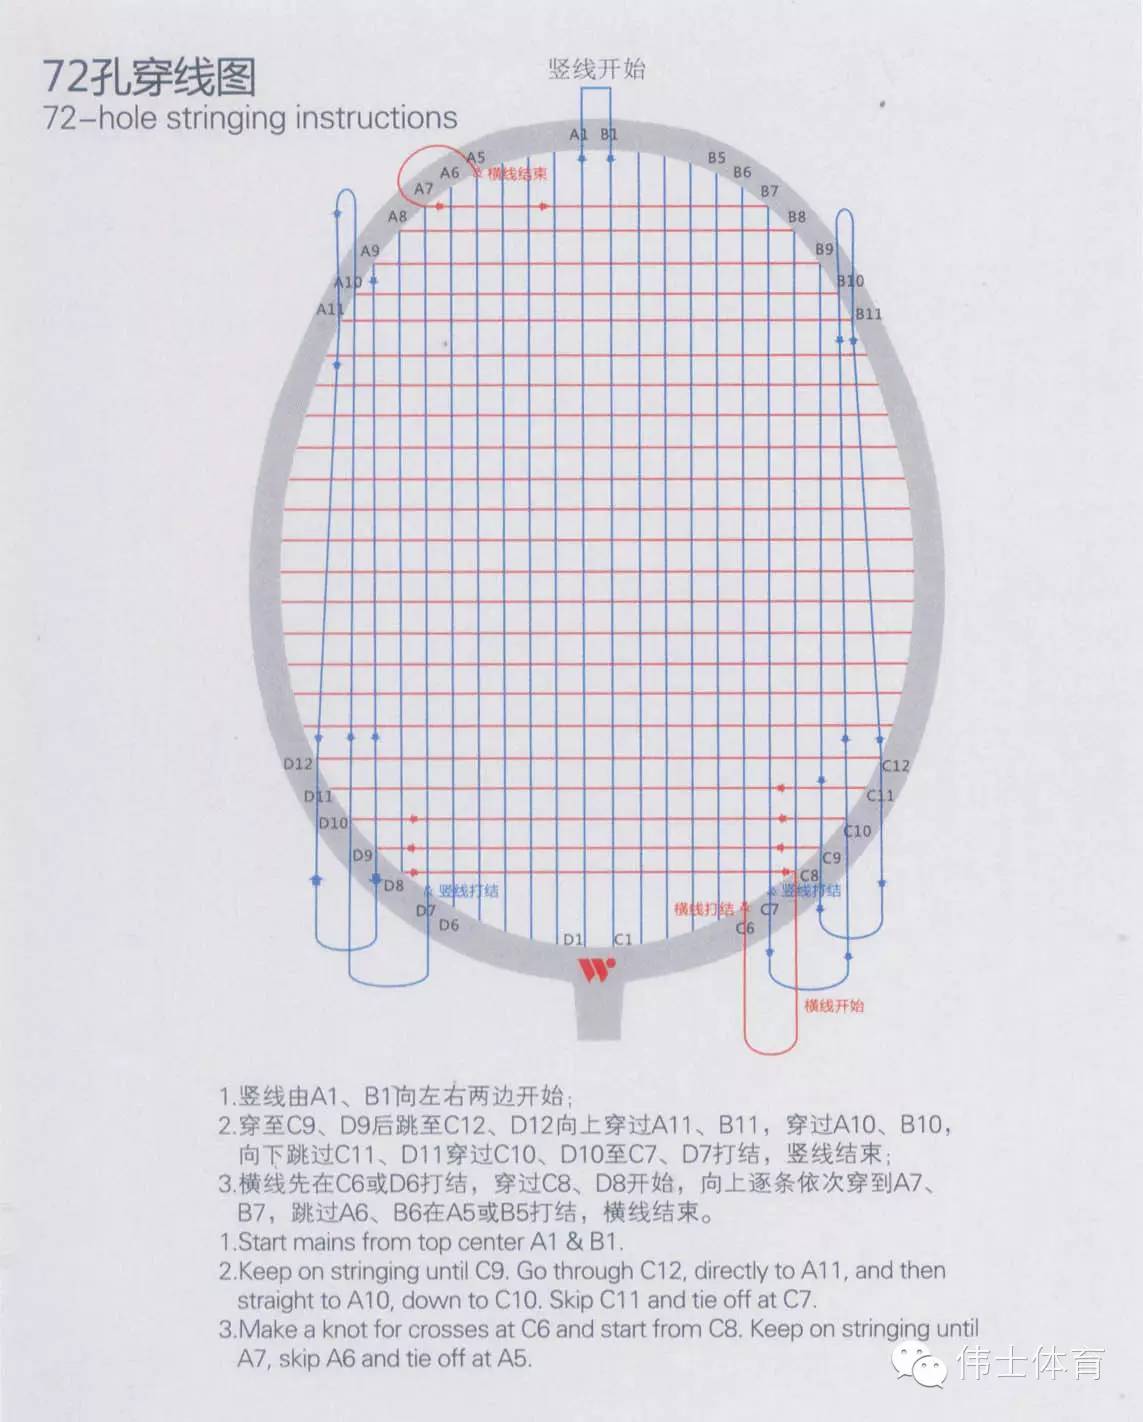 羽毛球76孔穿线图图片